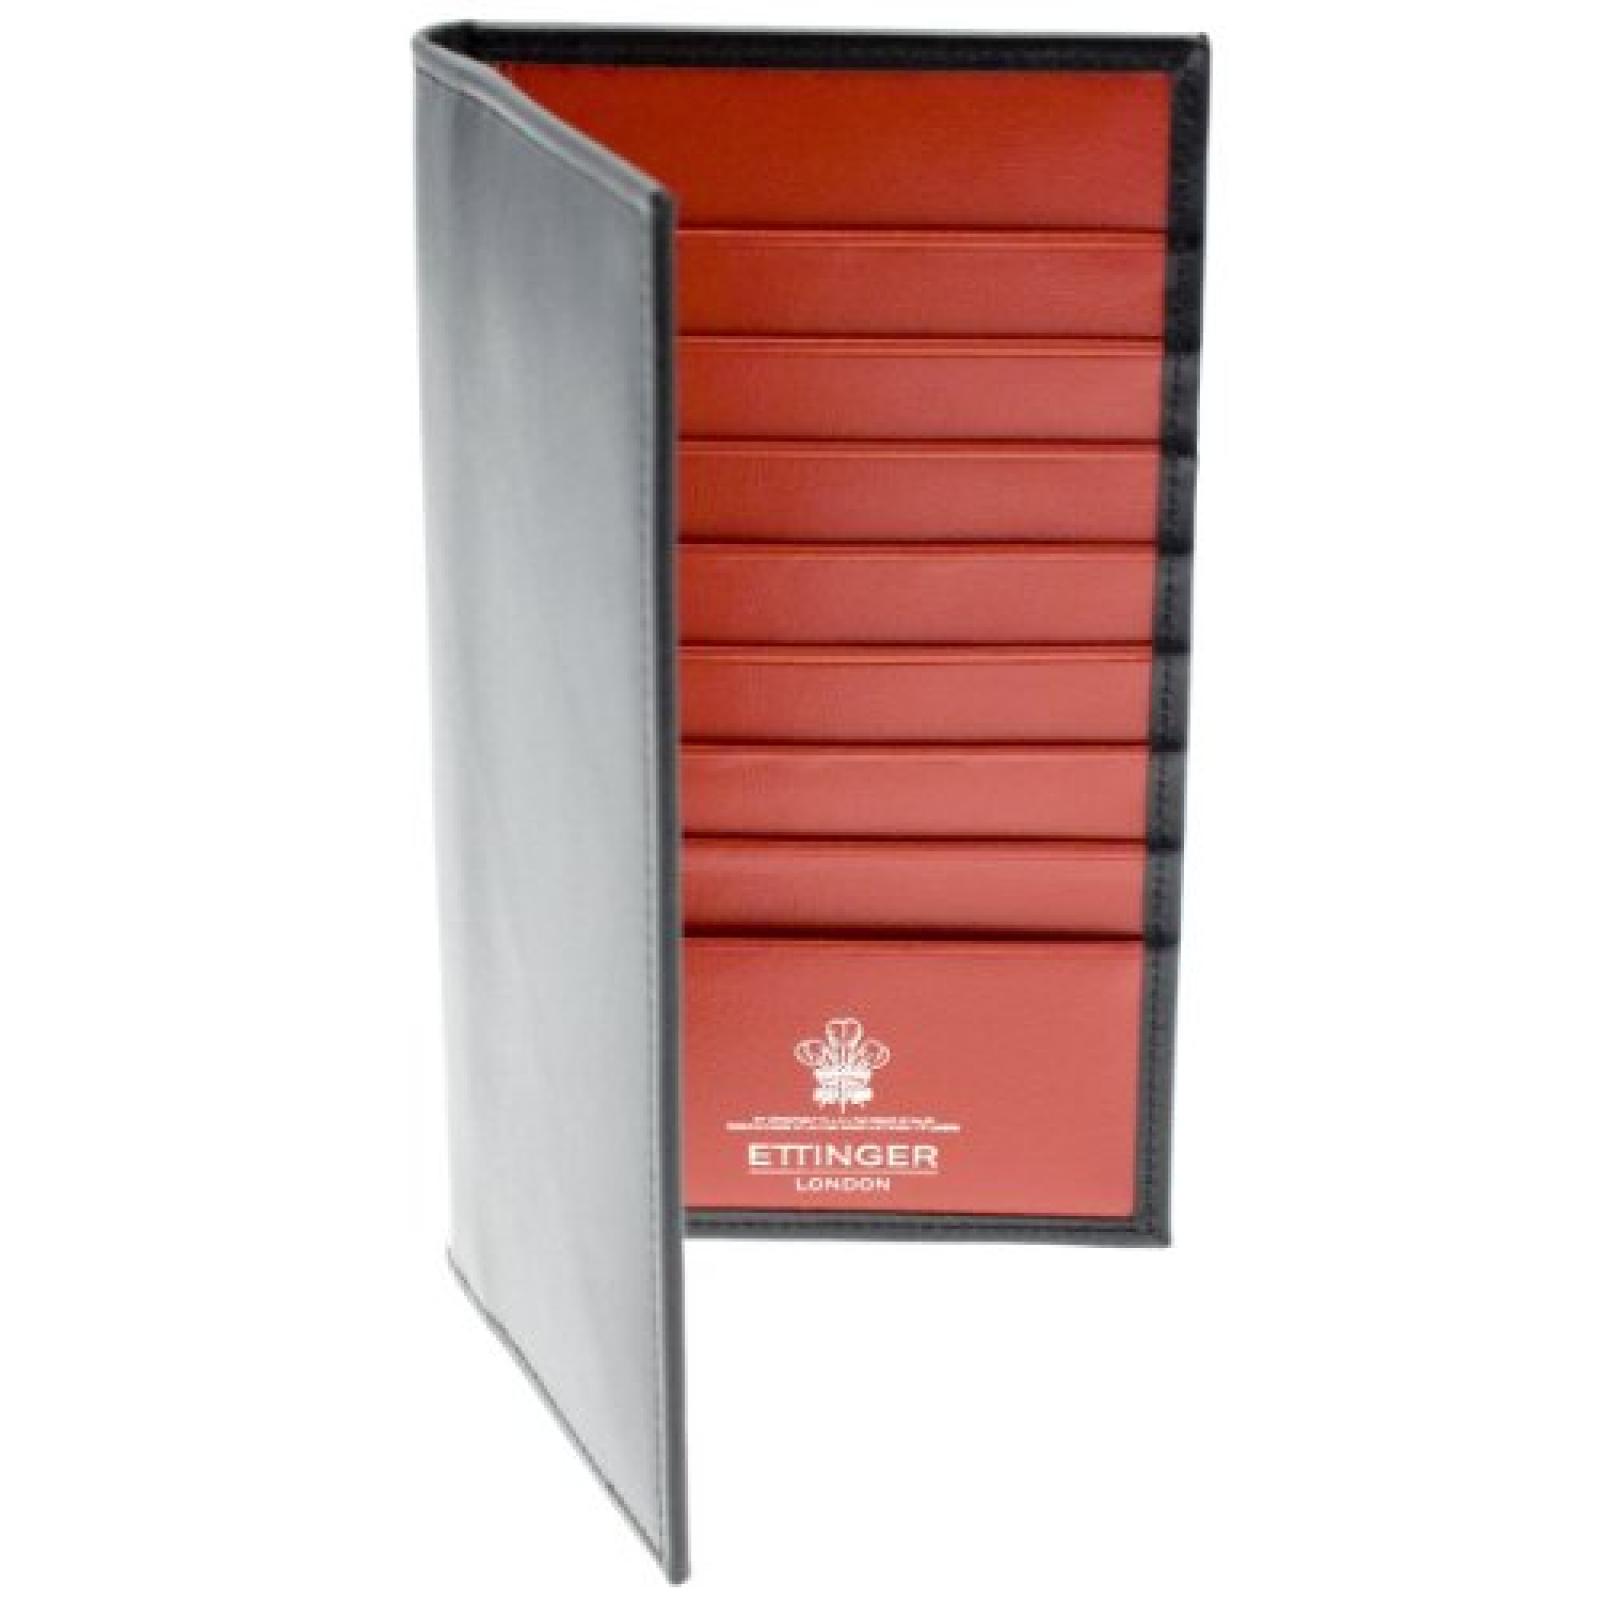 Ettinger Sterling Collection - Brieftasche aus Leder - Schwarz außen / Rot innen 